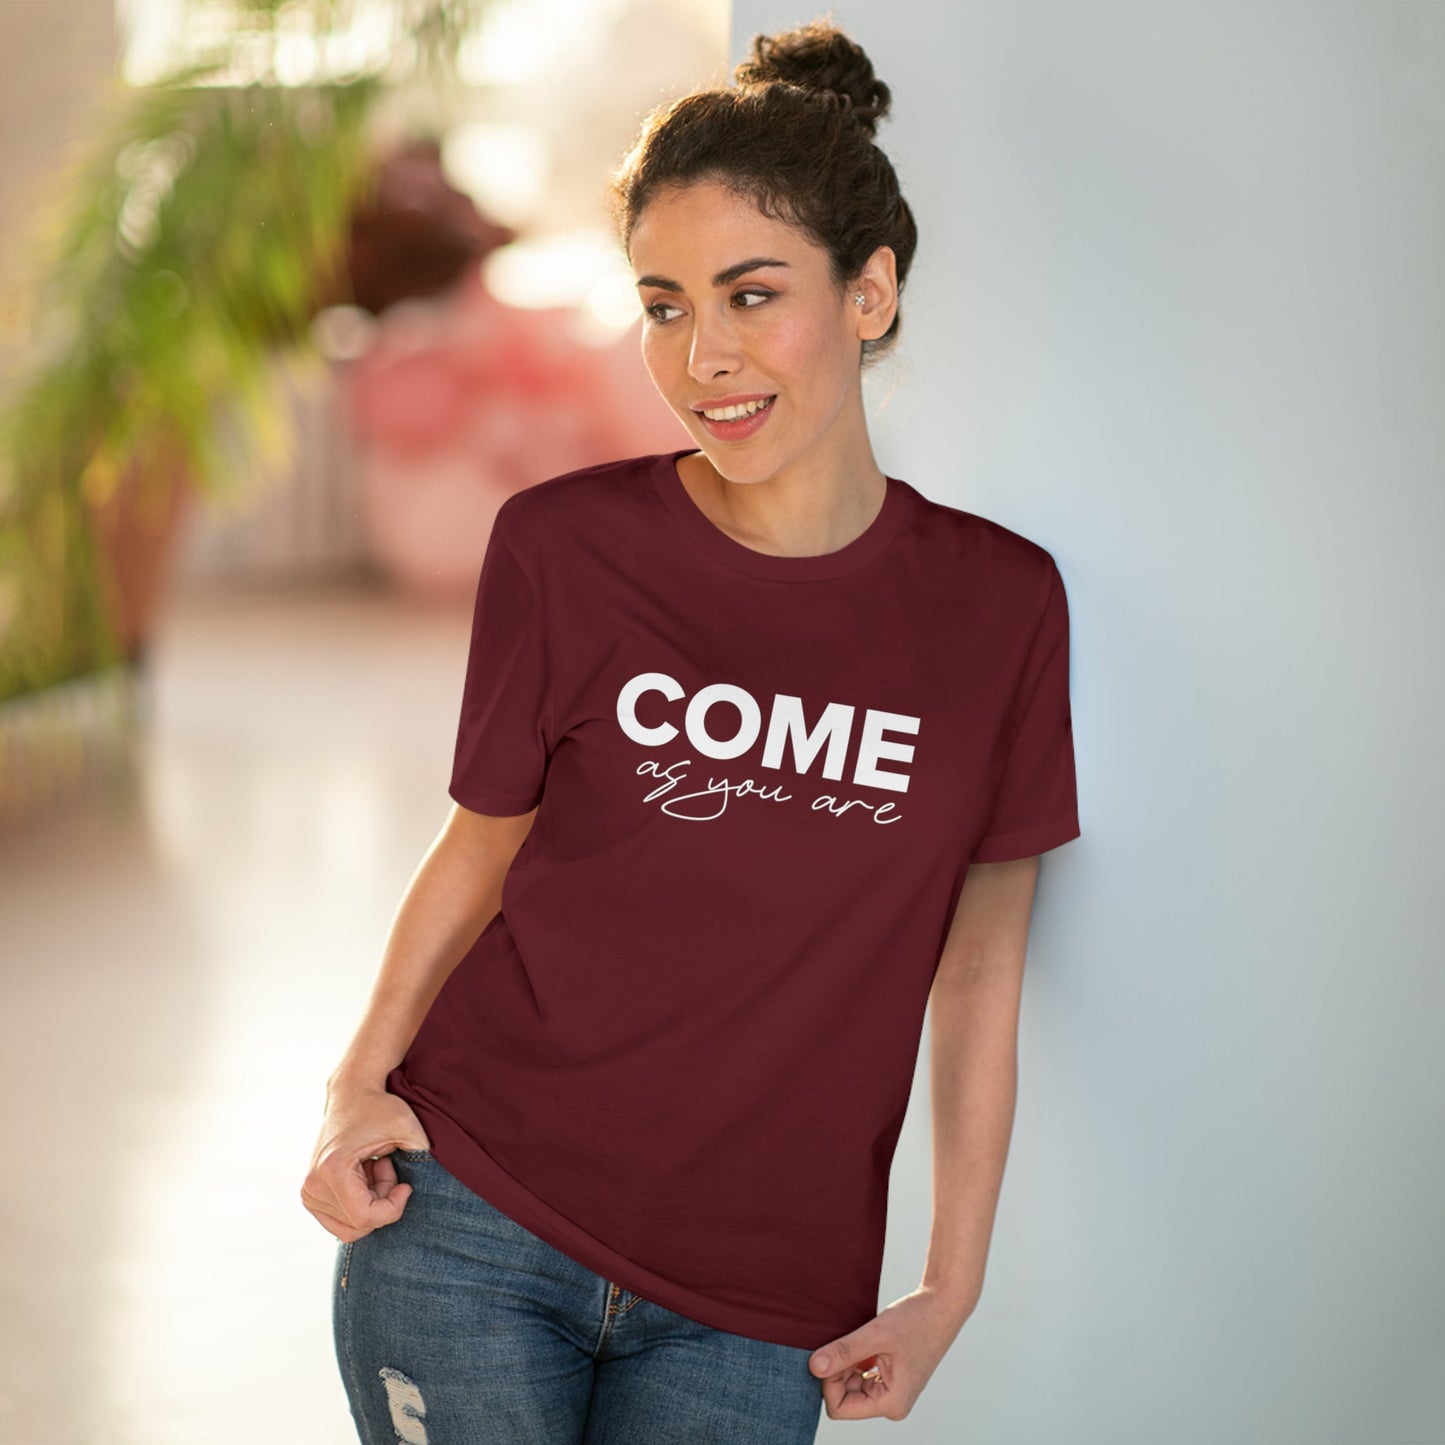 Organic Cotton 'Come As You Are' T-shirt - Fun Tshirt